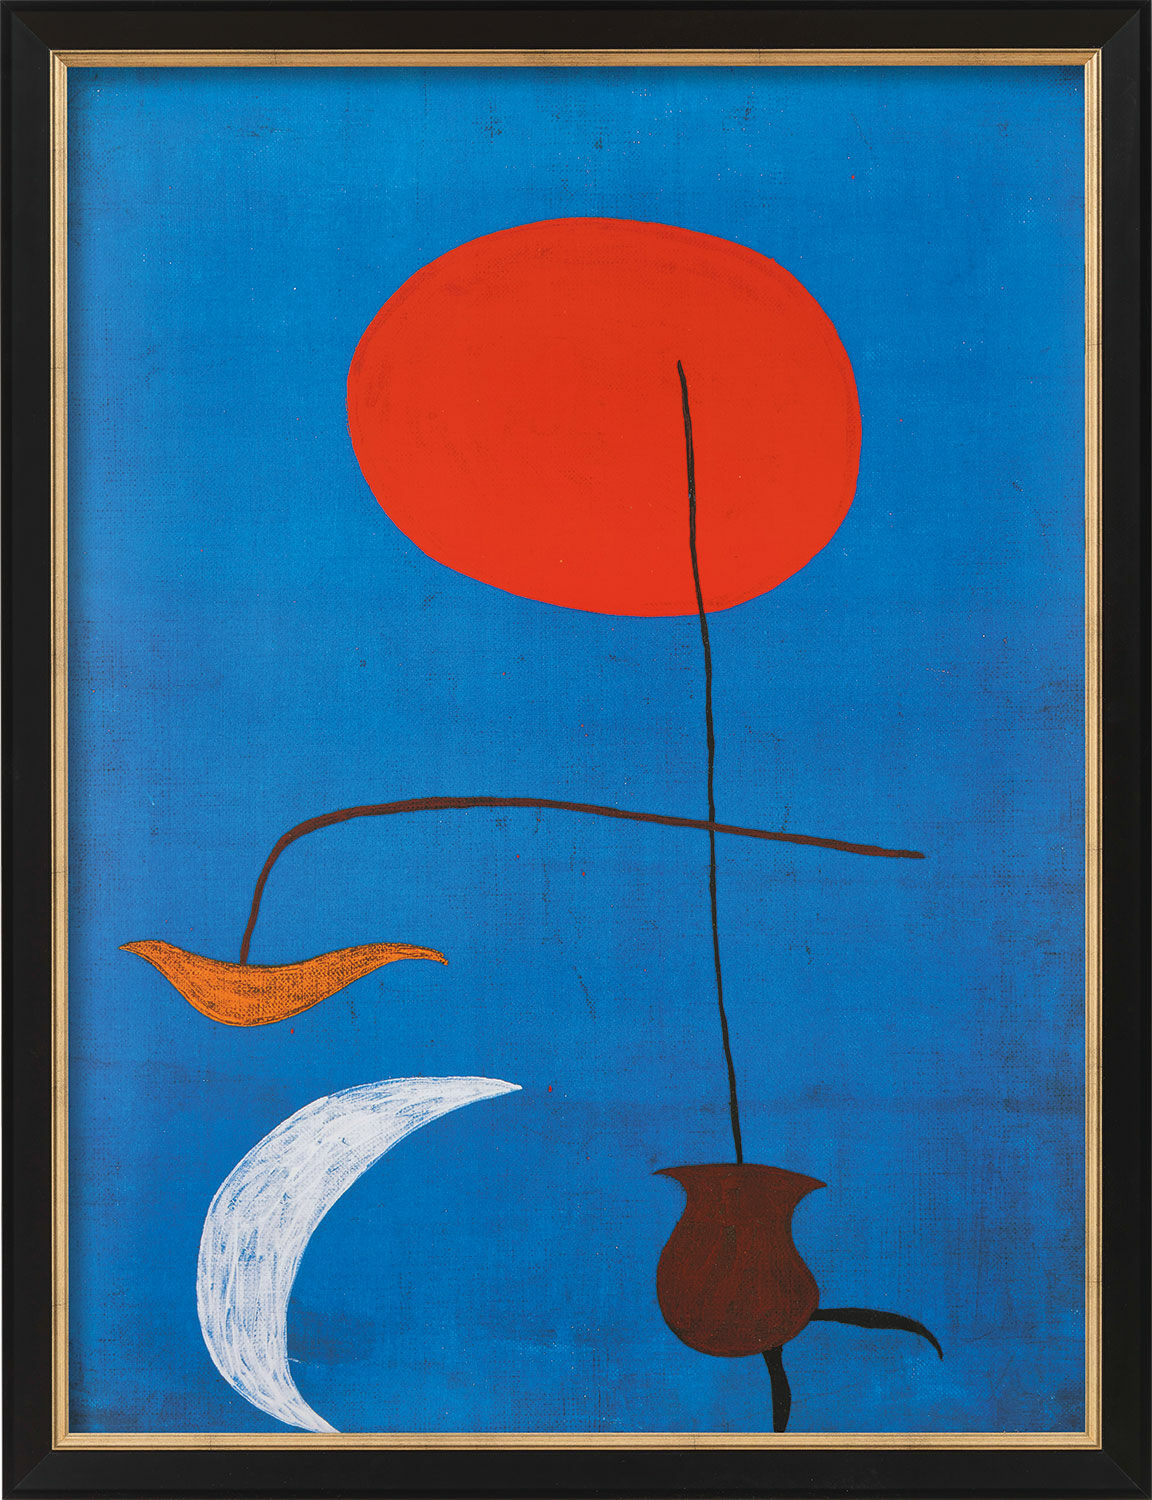 Billede "Design for a Tapestry" (1972), indrammet von Joan Miró